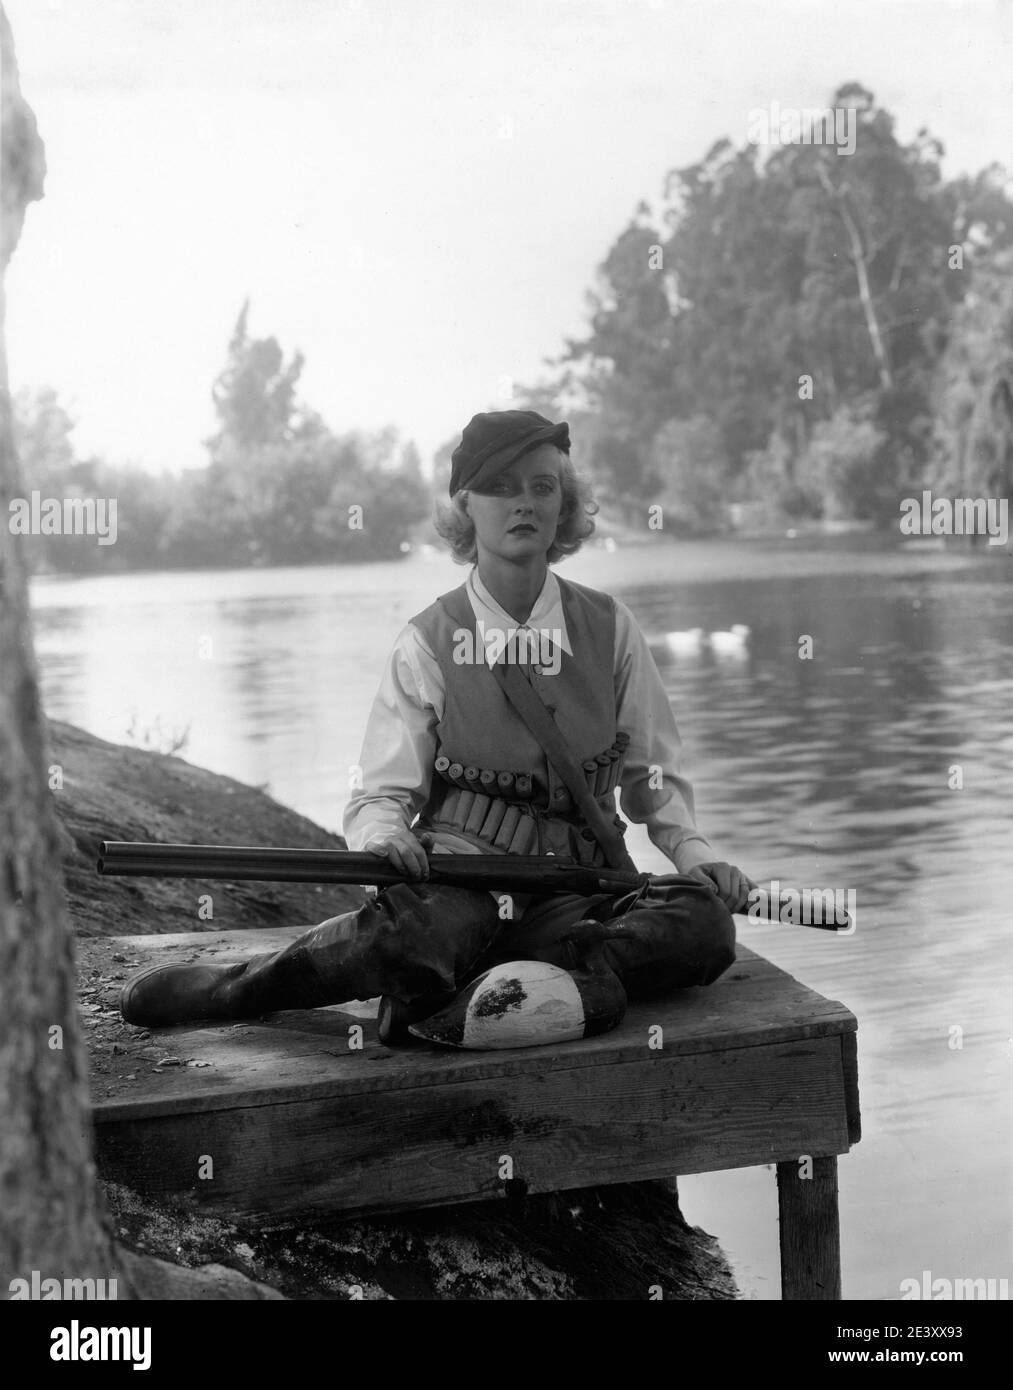 BETTE DAVIS in Duck Hunting Outfit mit Double Barreled Shotgun und Decoy ca. 1933 Werbepose für Warner Bros. Stockfoto